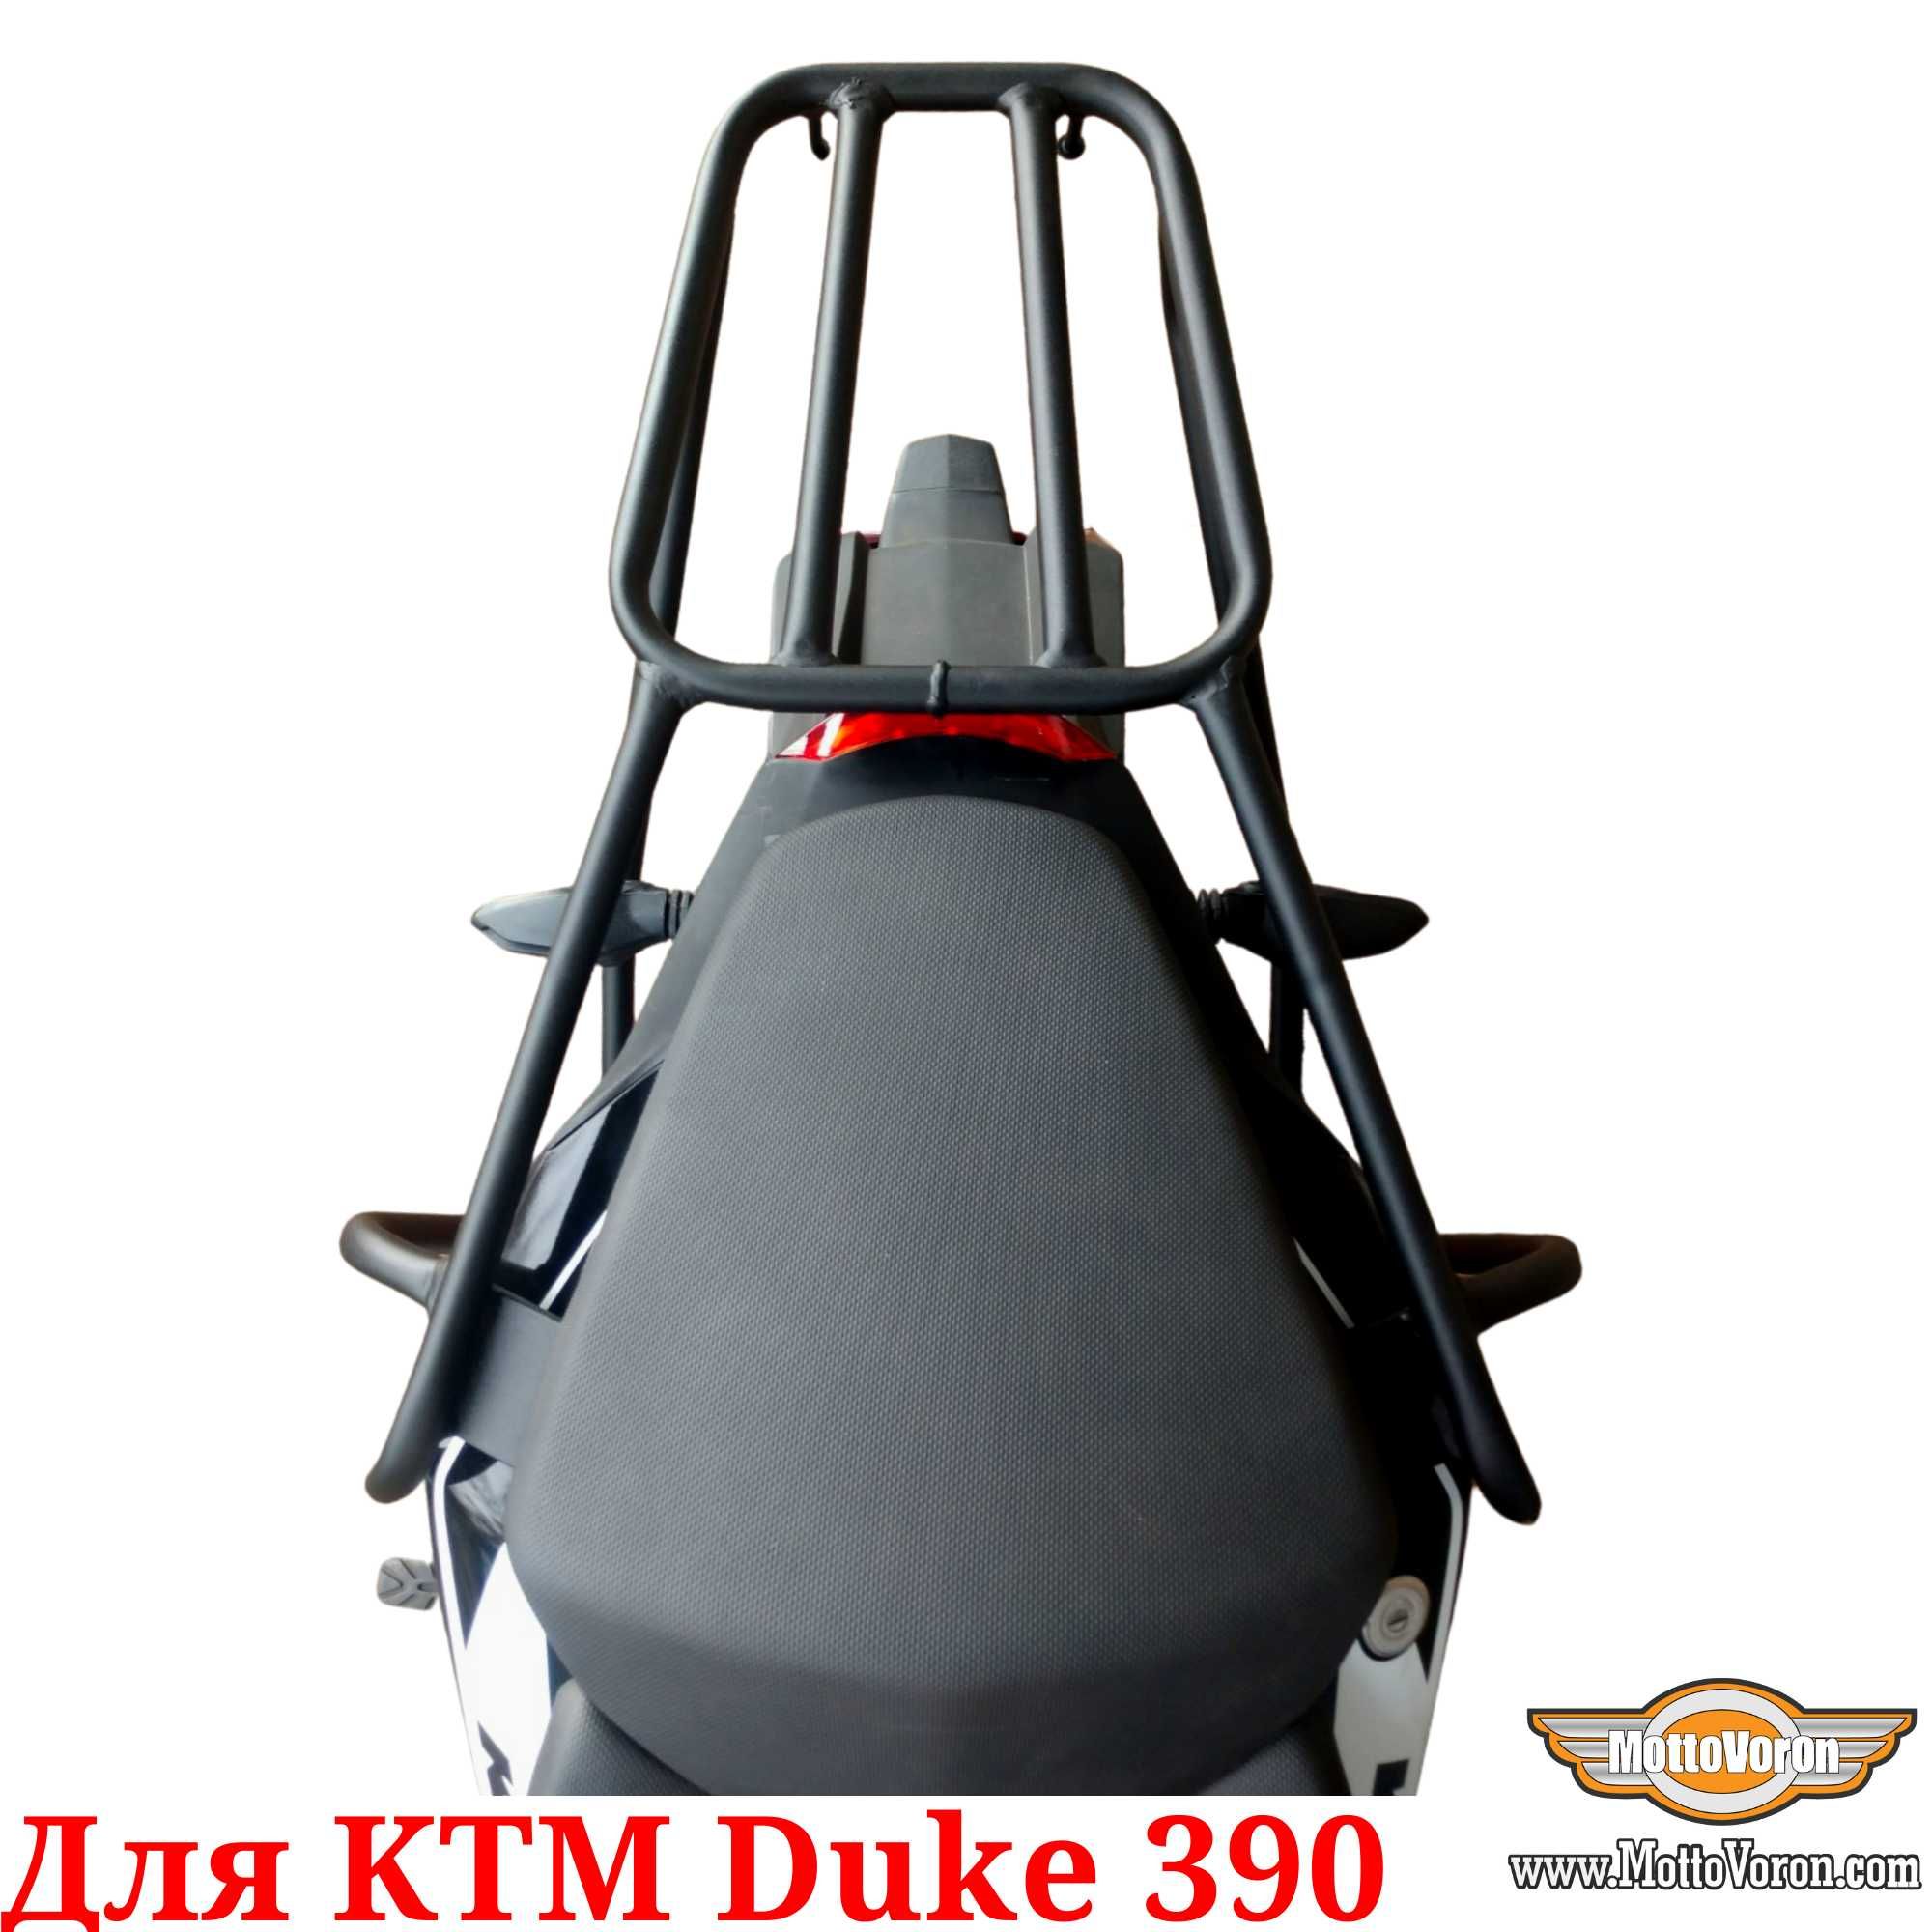 KTM 390 Duke Багажник KTM Duke 390 багажная система кофр сумку 2021-22